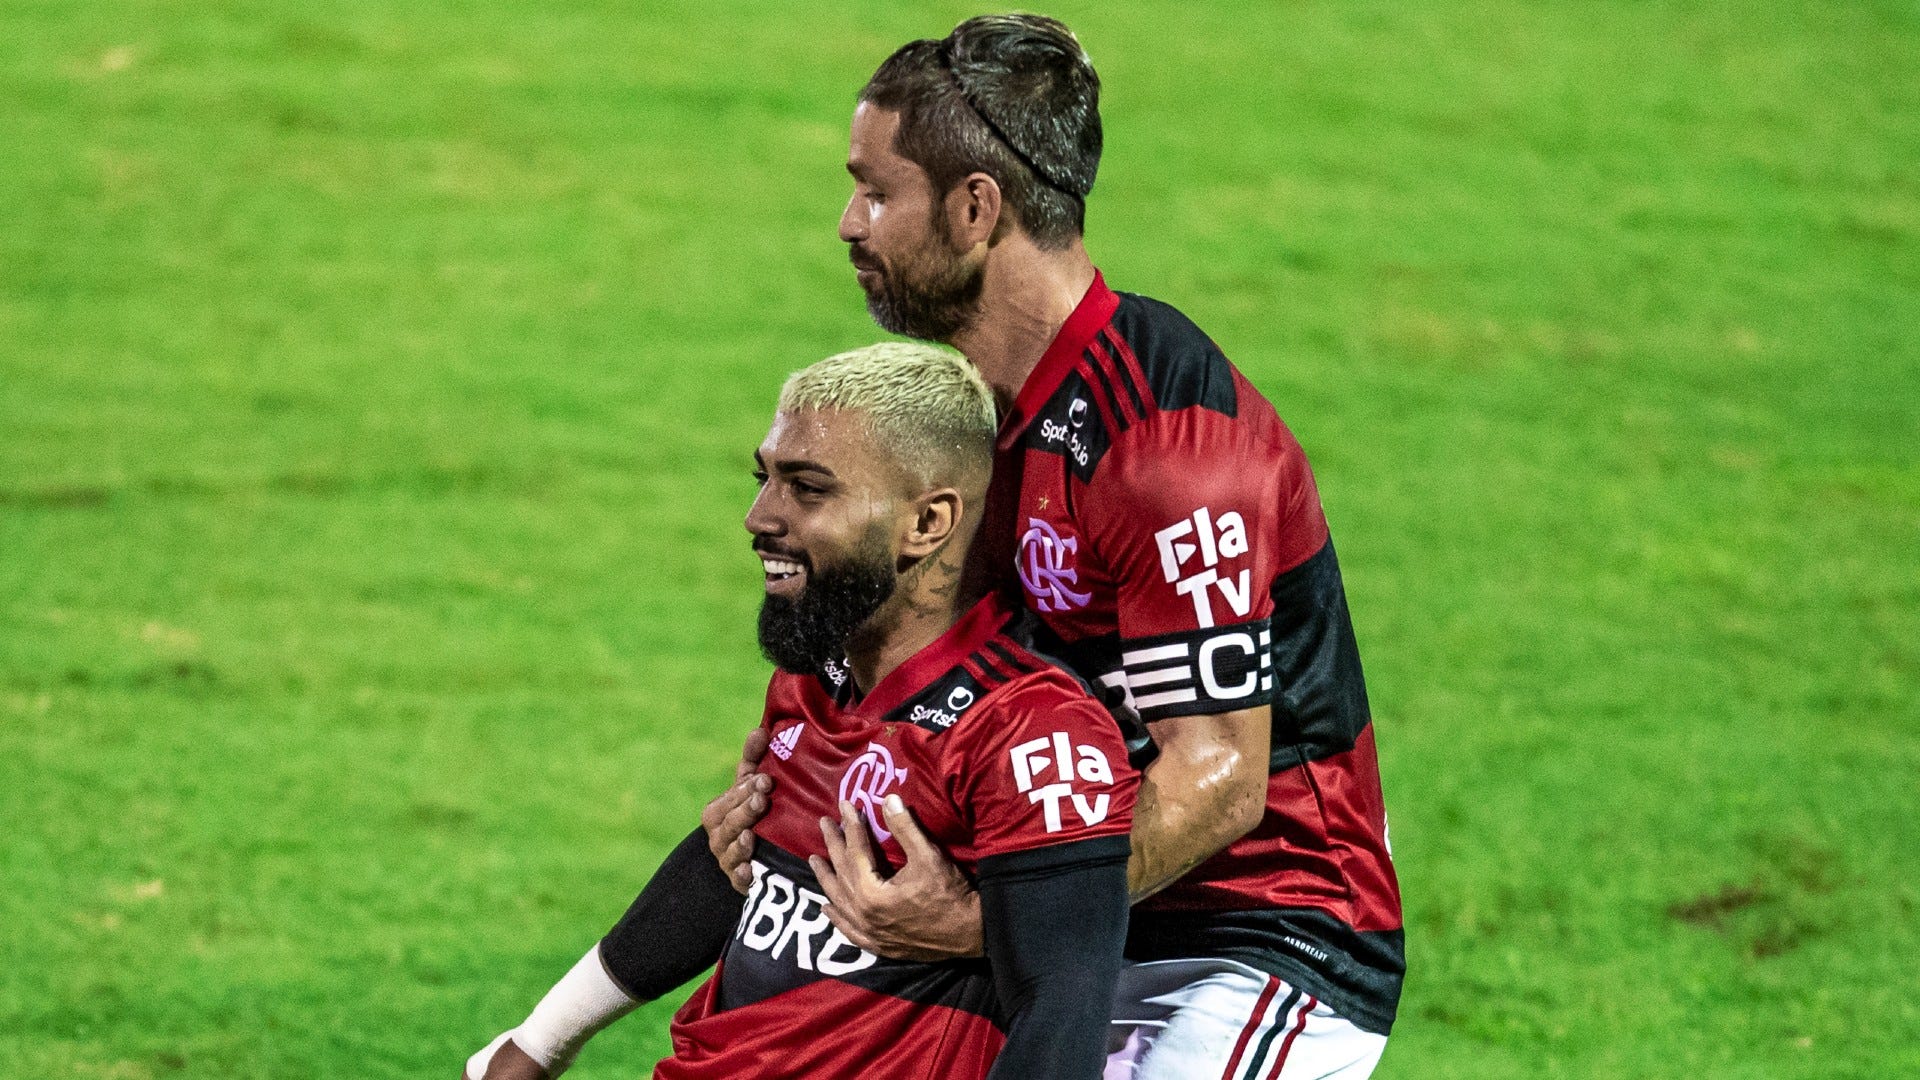 Supercopa do Brasil: como assistir Flamengo x Palmeiras online gratuitamente  - TV História